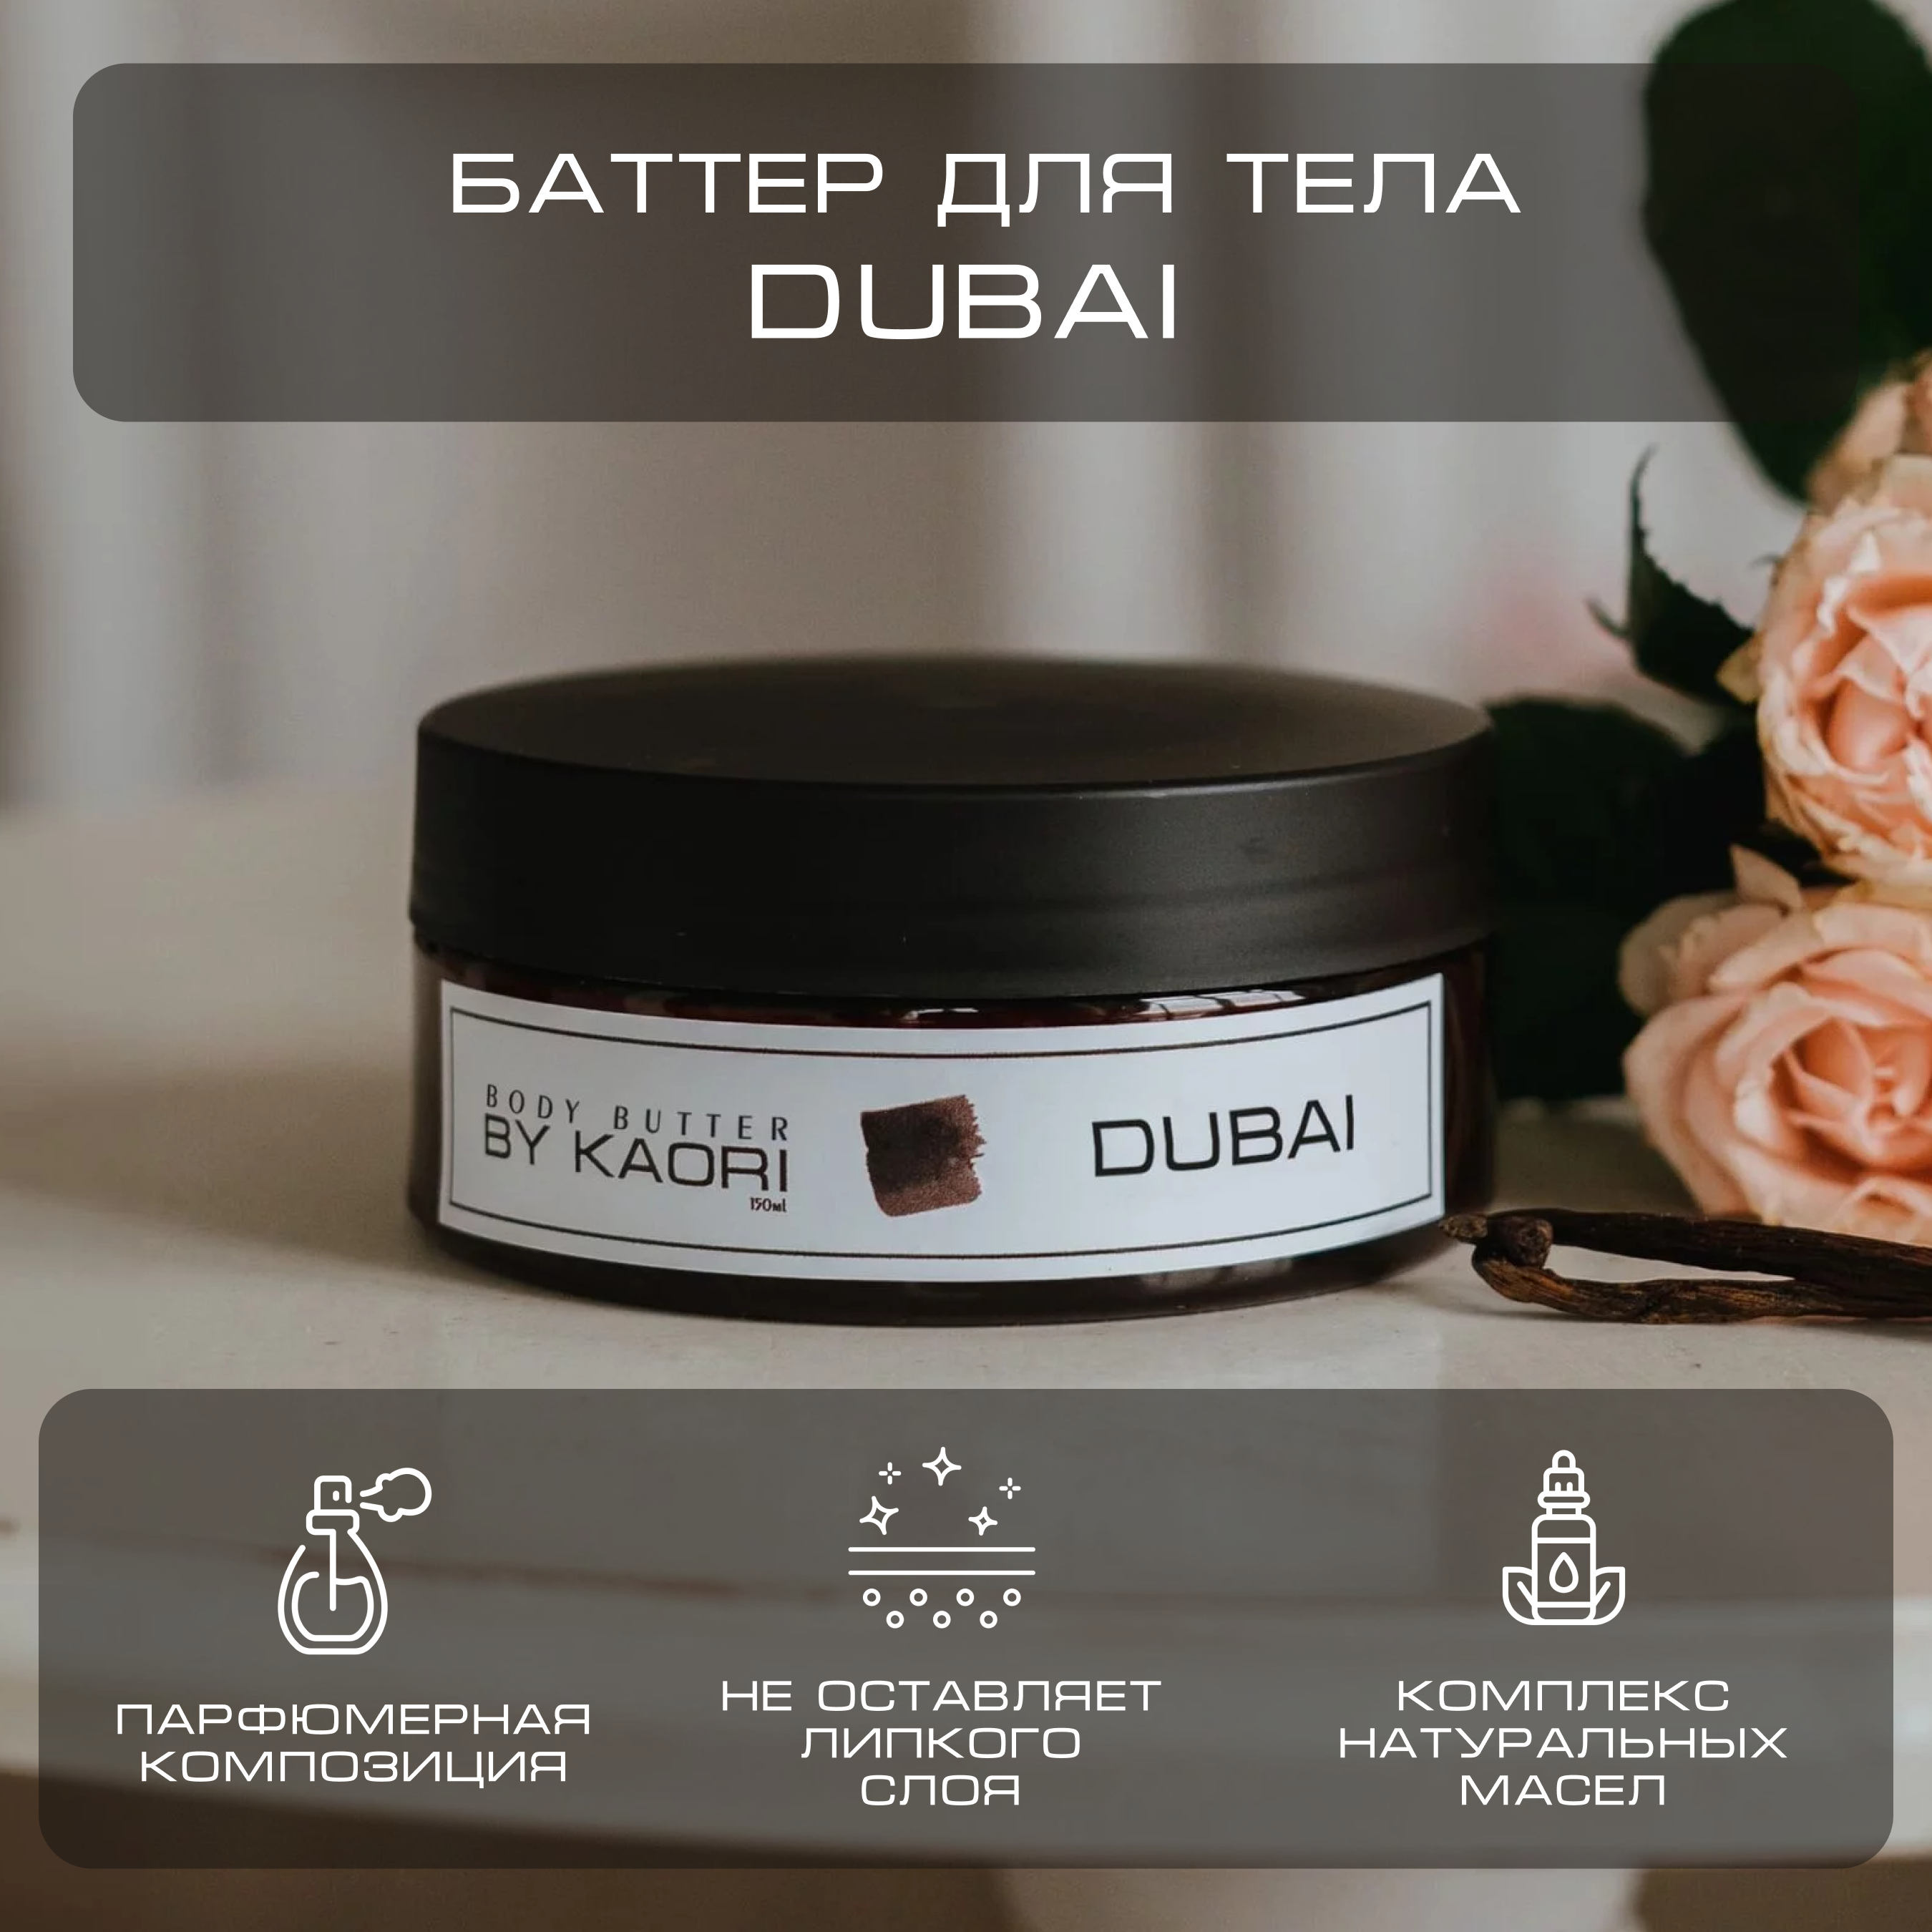 Баттер для тела питательный By Kaori парфюмированный увлажняющий Dubai 150 мл